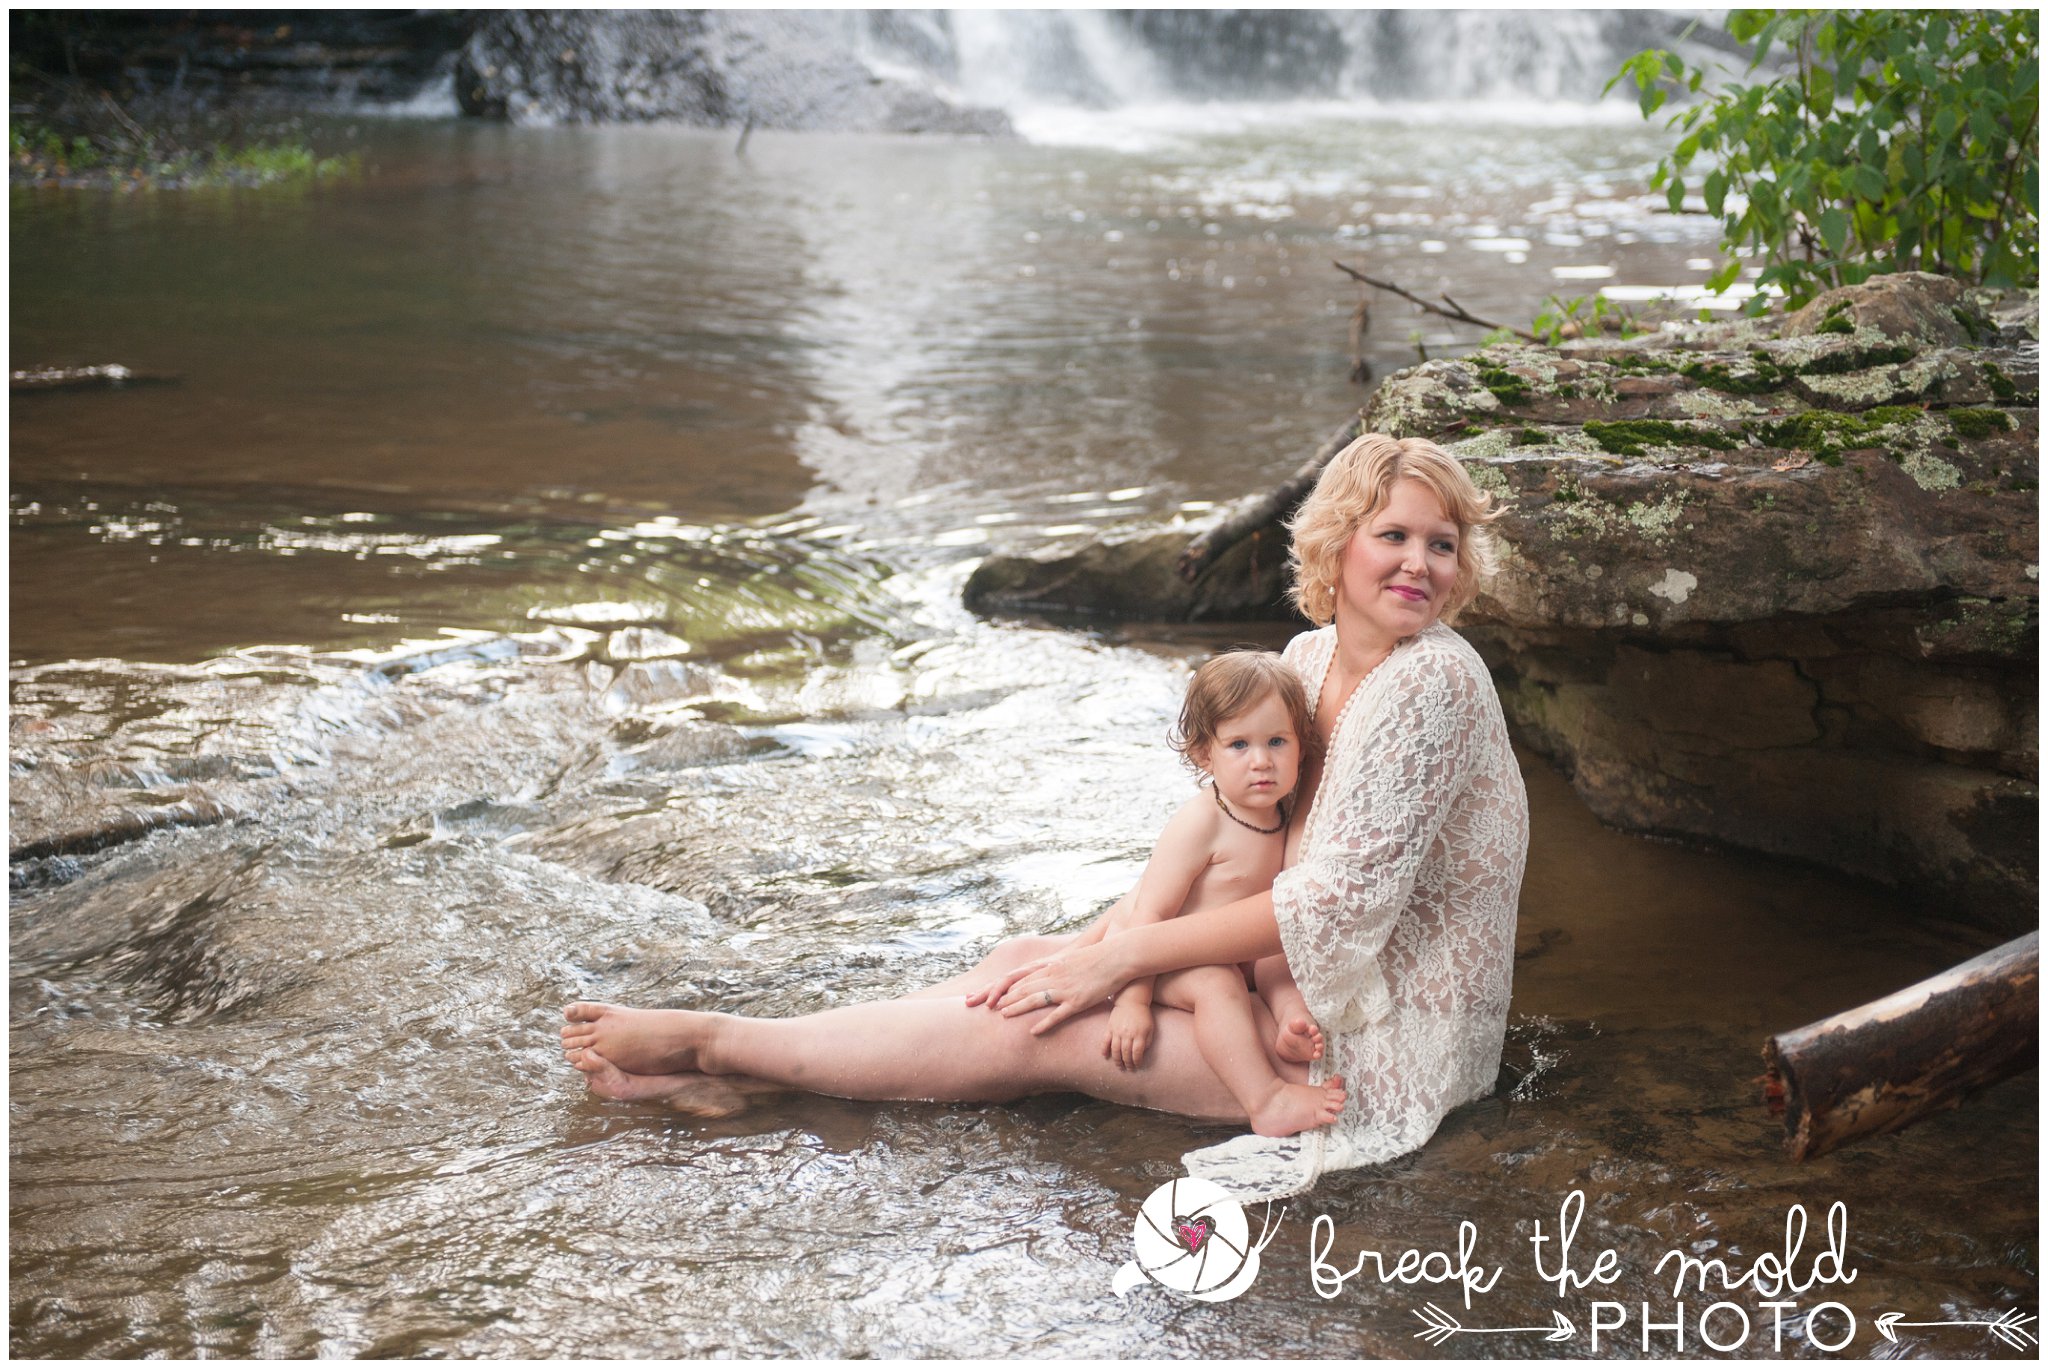 break-the-mold-photo-nursing-mothers-waterfall-women-celebrate-beauty_5448.jpg